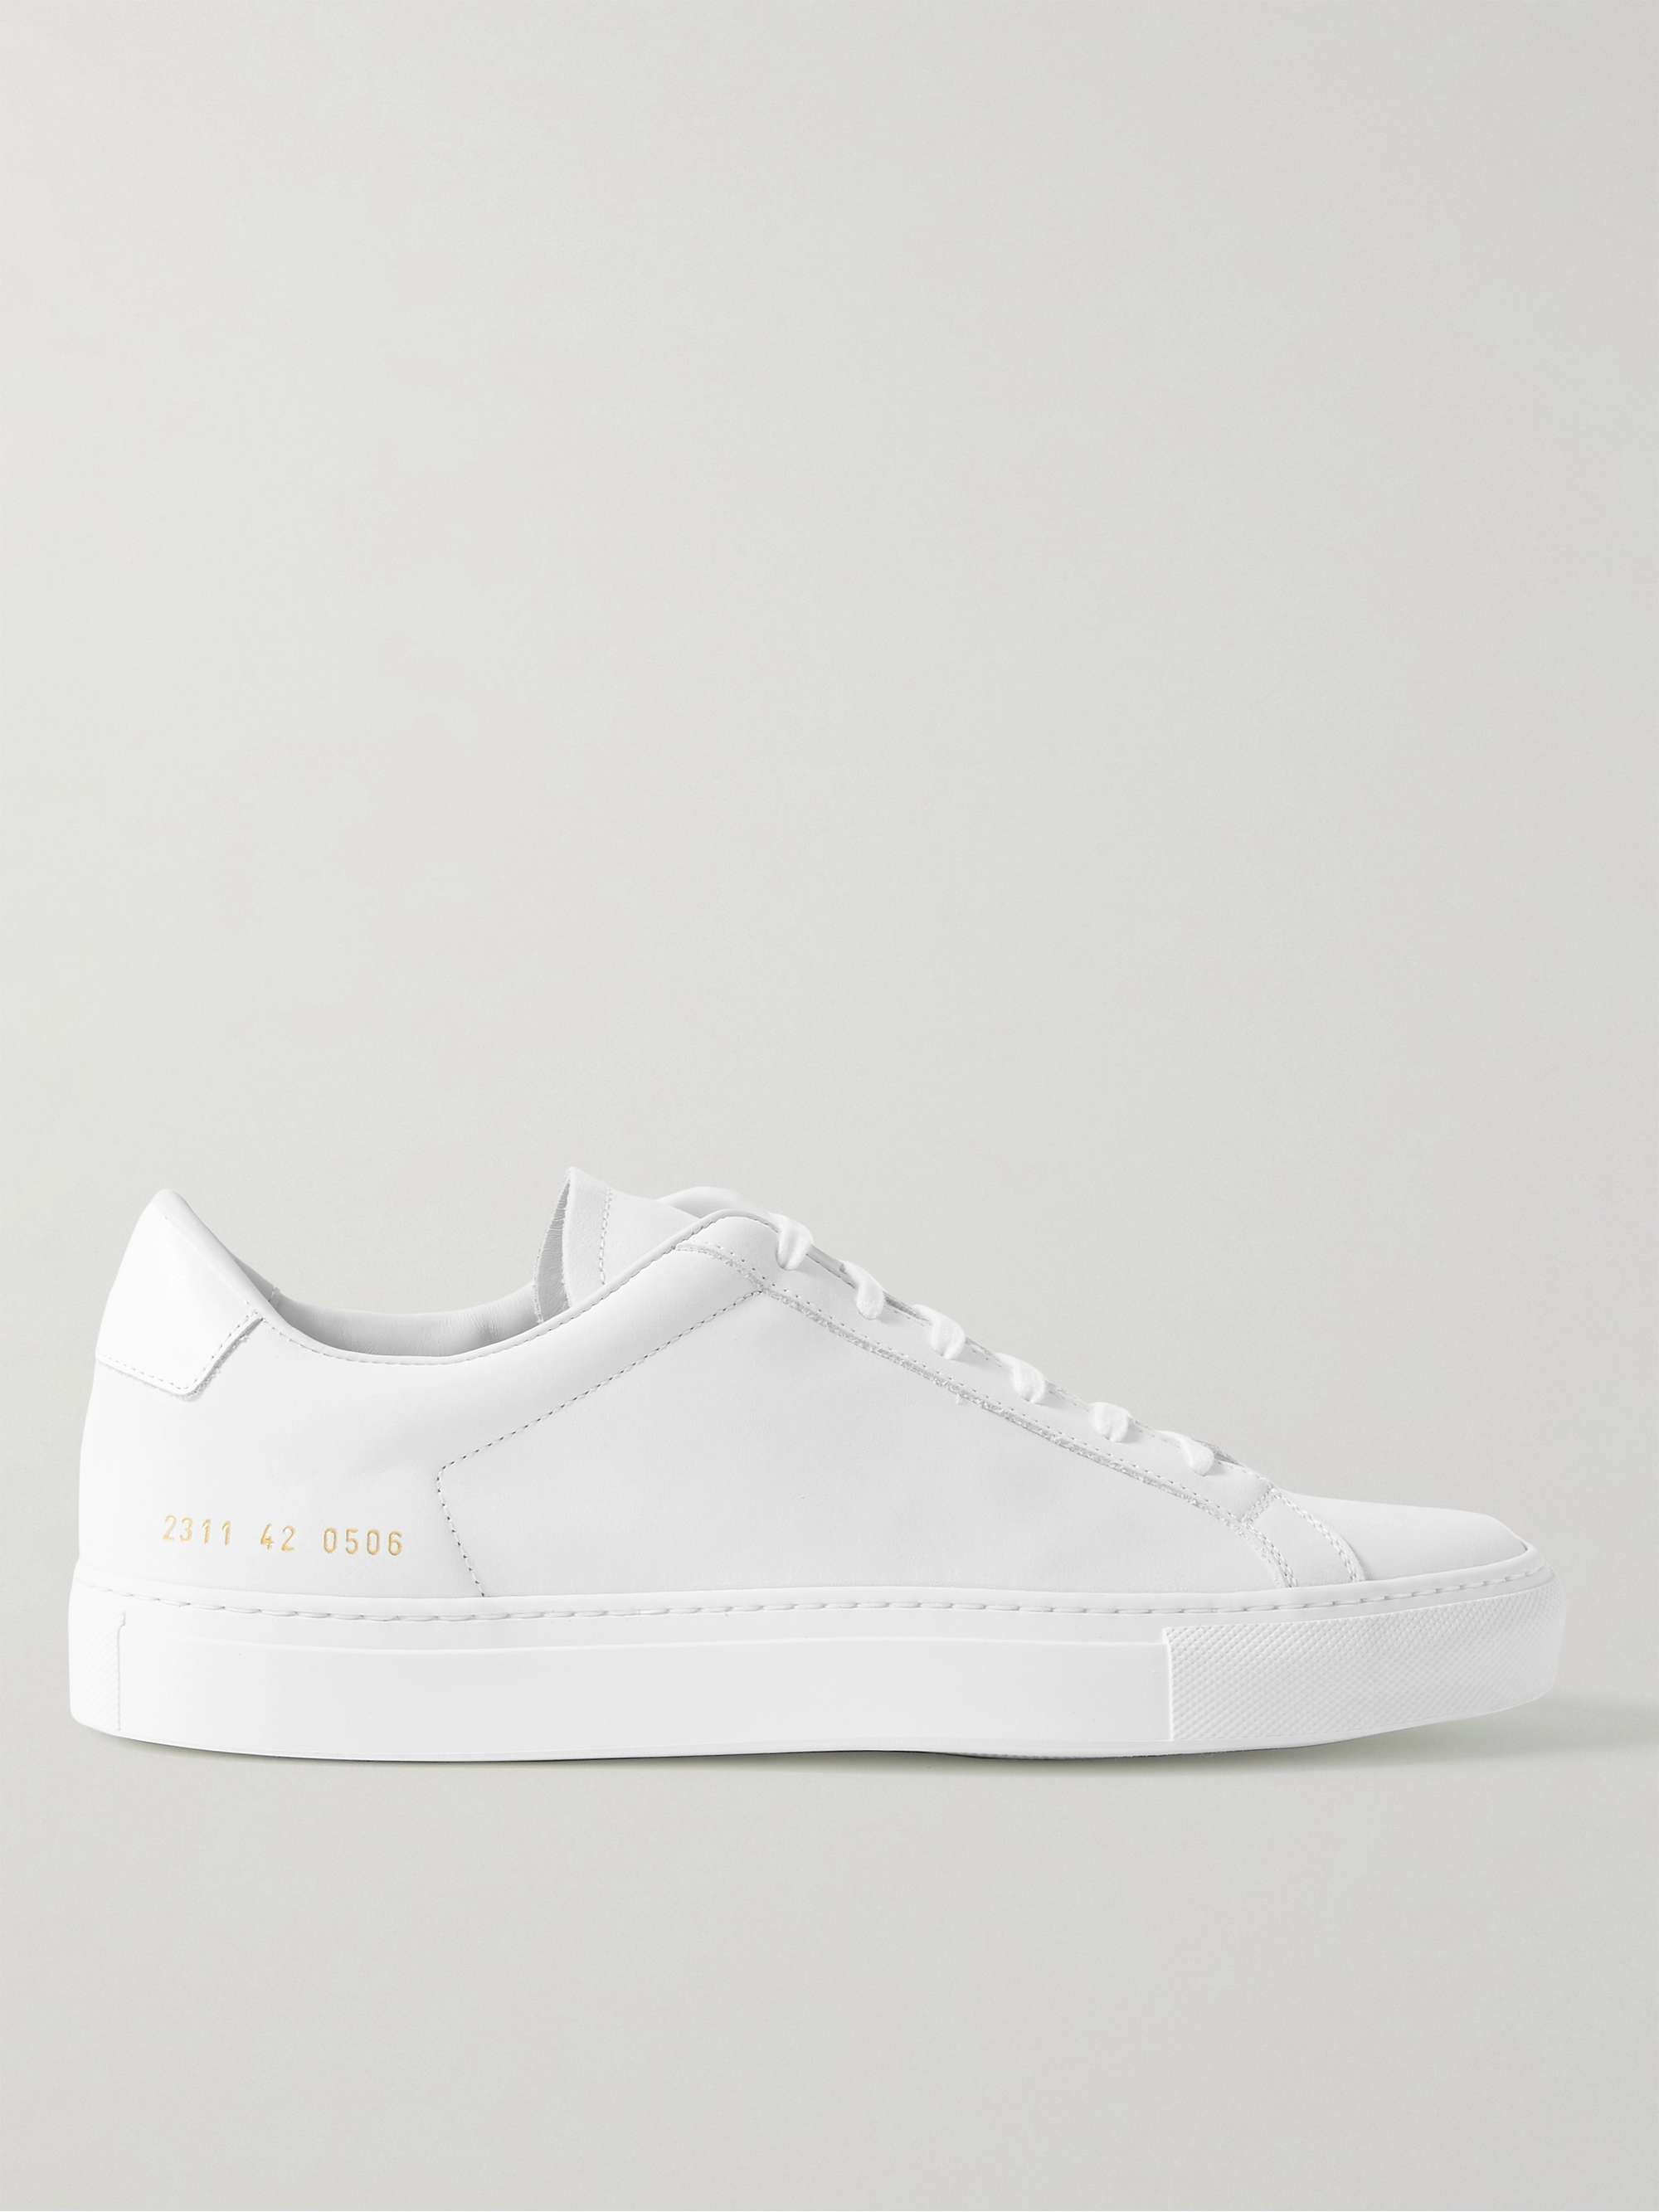 커먼 프로젝트 레트로 스니커즈 Common Projects Retro Nubuck Sneakers,White